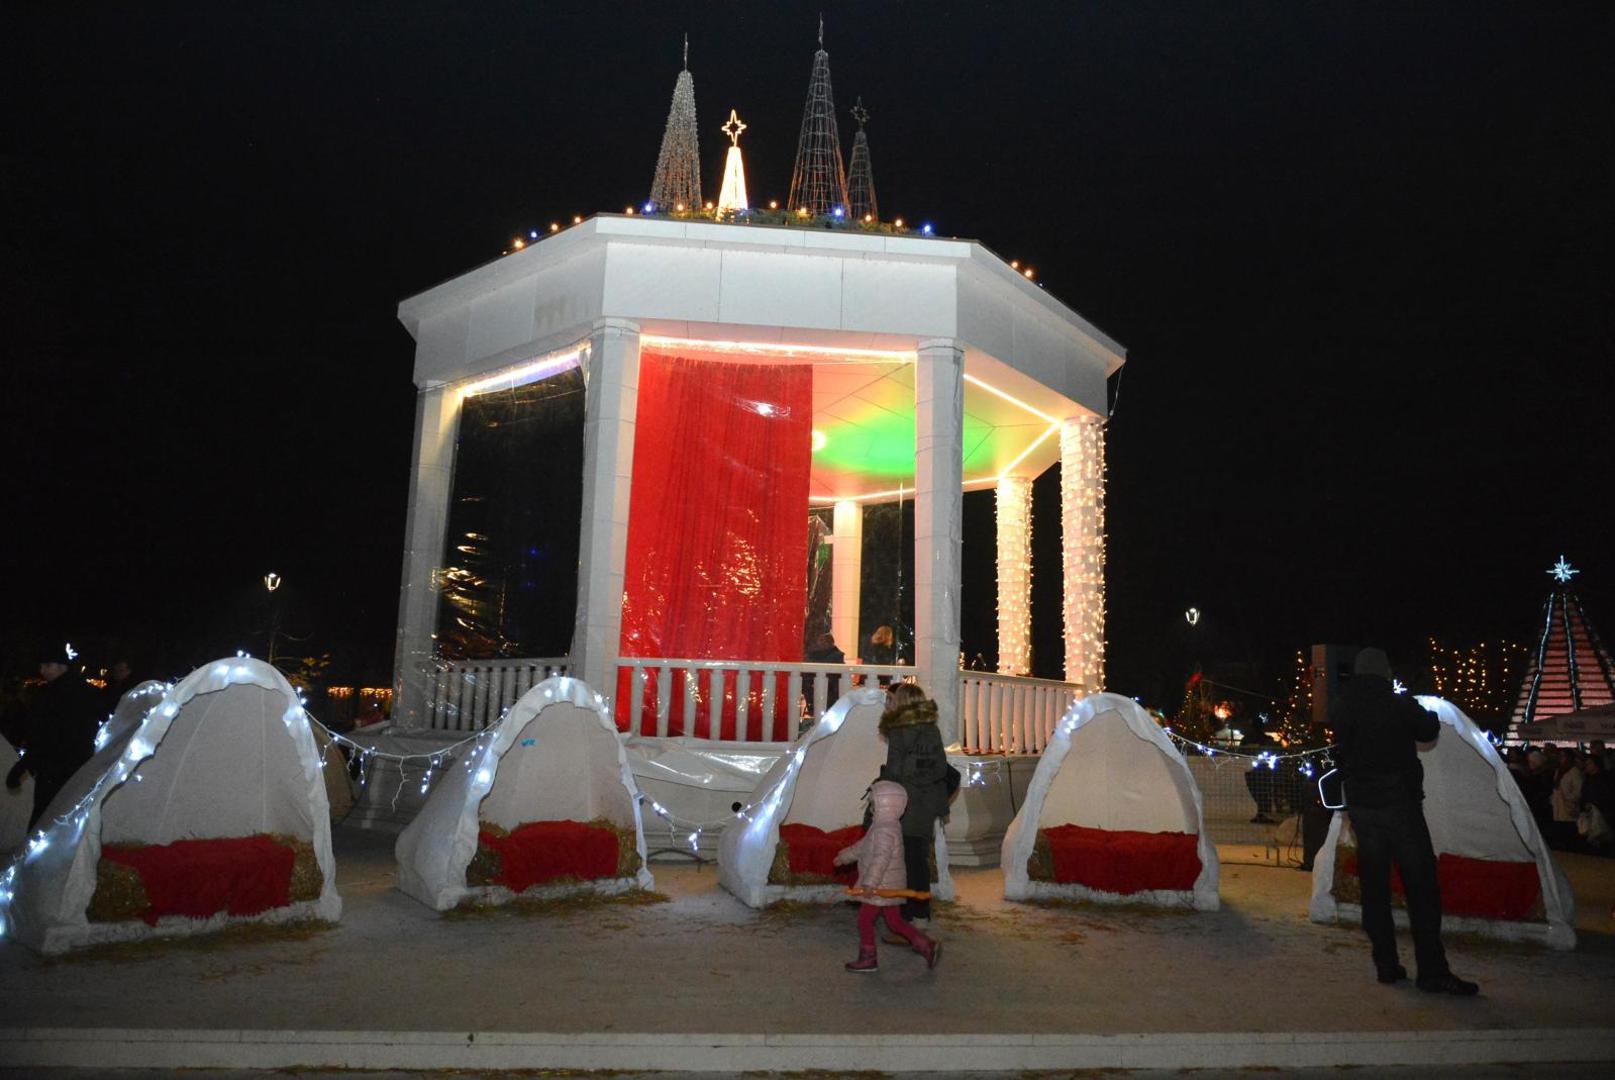 Paljenjem prve adventske svijece na paviljonu otpocela je manifestacija 'Advent u Bjelovaru', koja će trajati do 7. sijecnja 2018.

